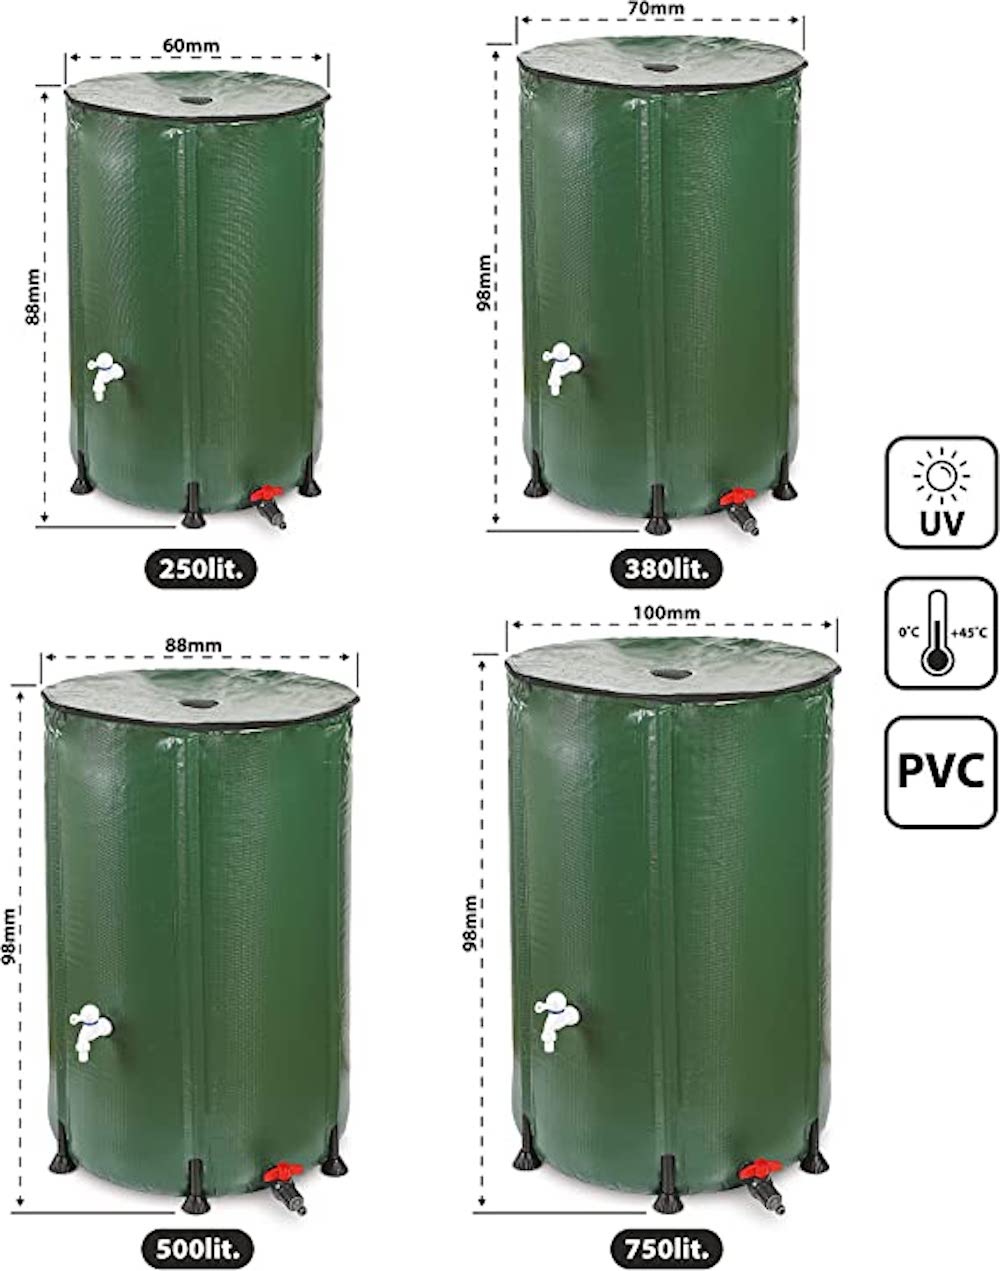 RENATA Faltbare grüne Regentonne aus UV-stabilem PVC, 750 Liter Volumen, inkl. Filter & Schlauchschnelladapter, Tonne, Regentonne, Mehrzweckfass, Kunststoffbehälter, Wassertank